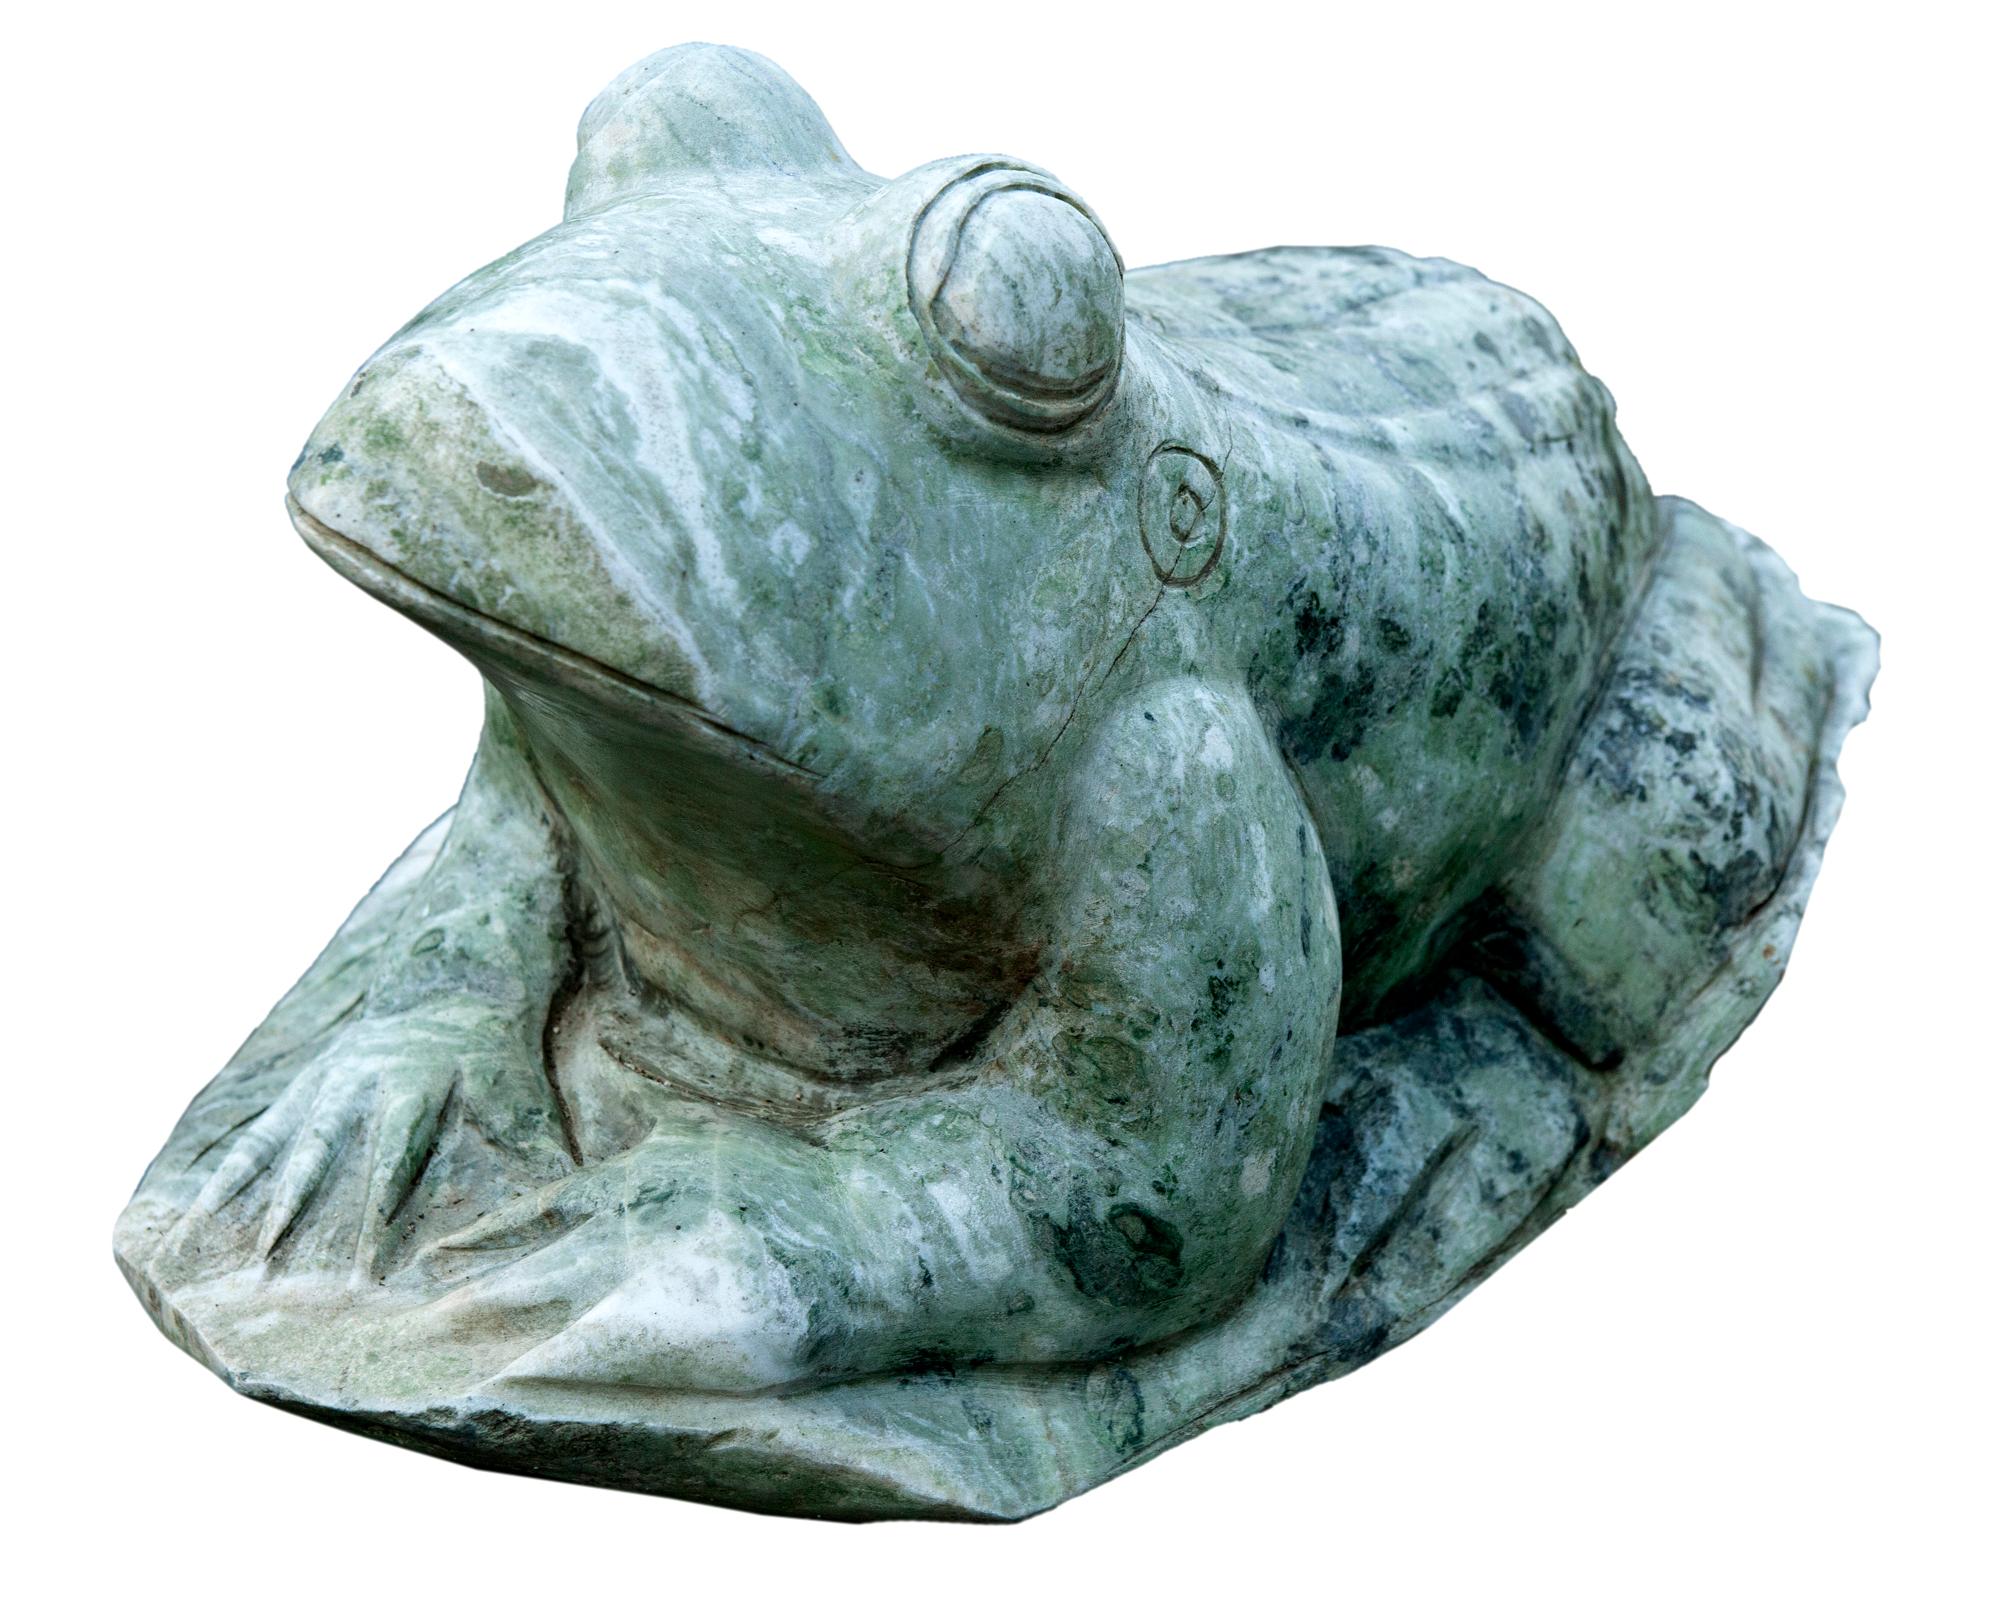 Jadeit-Frosch ist undurchsichtig und matt, handgeschnitzt aus der wertvollsten Jadeart, mit Farbvariationen von blassem Weiß bis tiefem Schwarzgrün. Der Frosch sitzt auf umgeklappten Hinterbeinen und hat große Augen und einen nach unten gerichteten